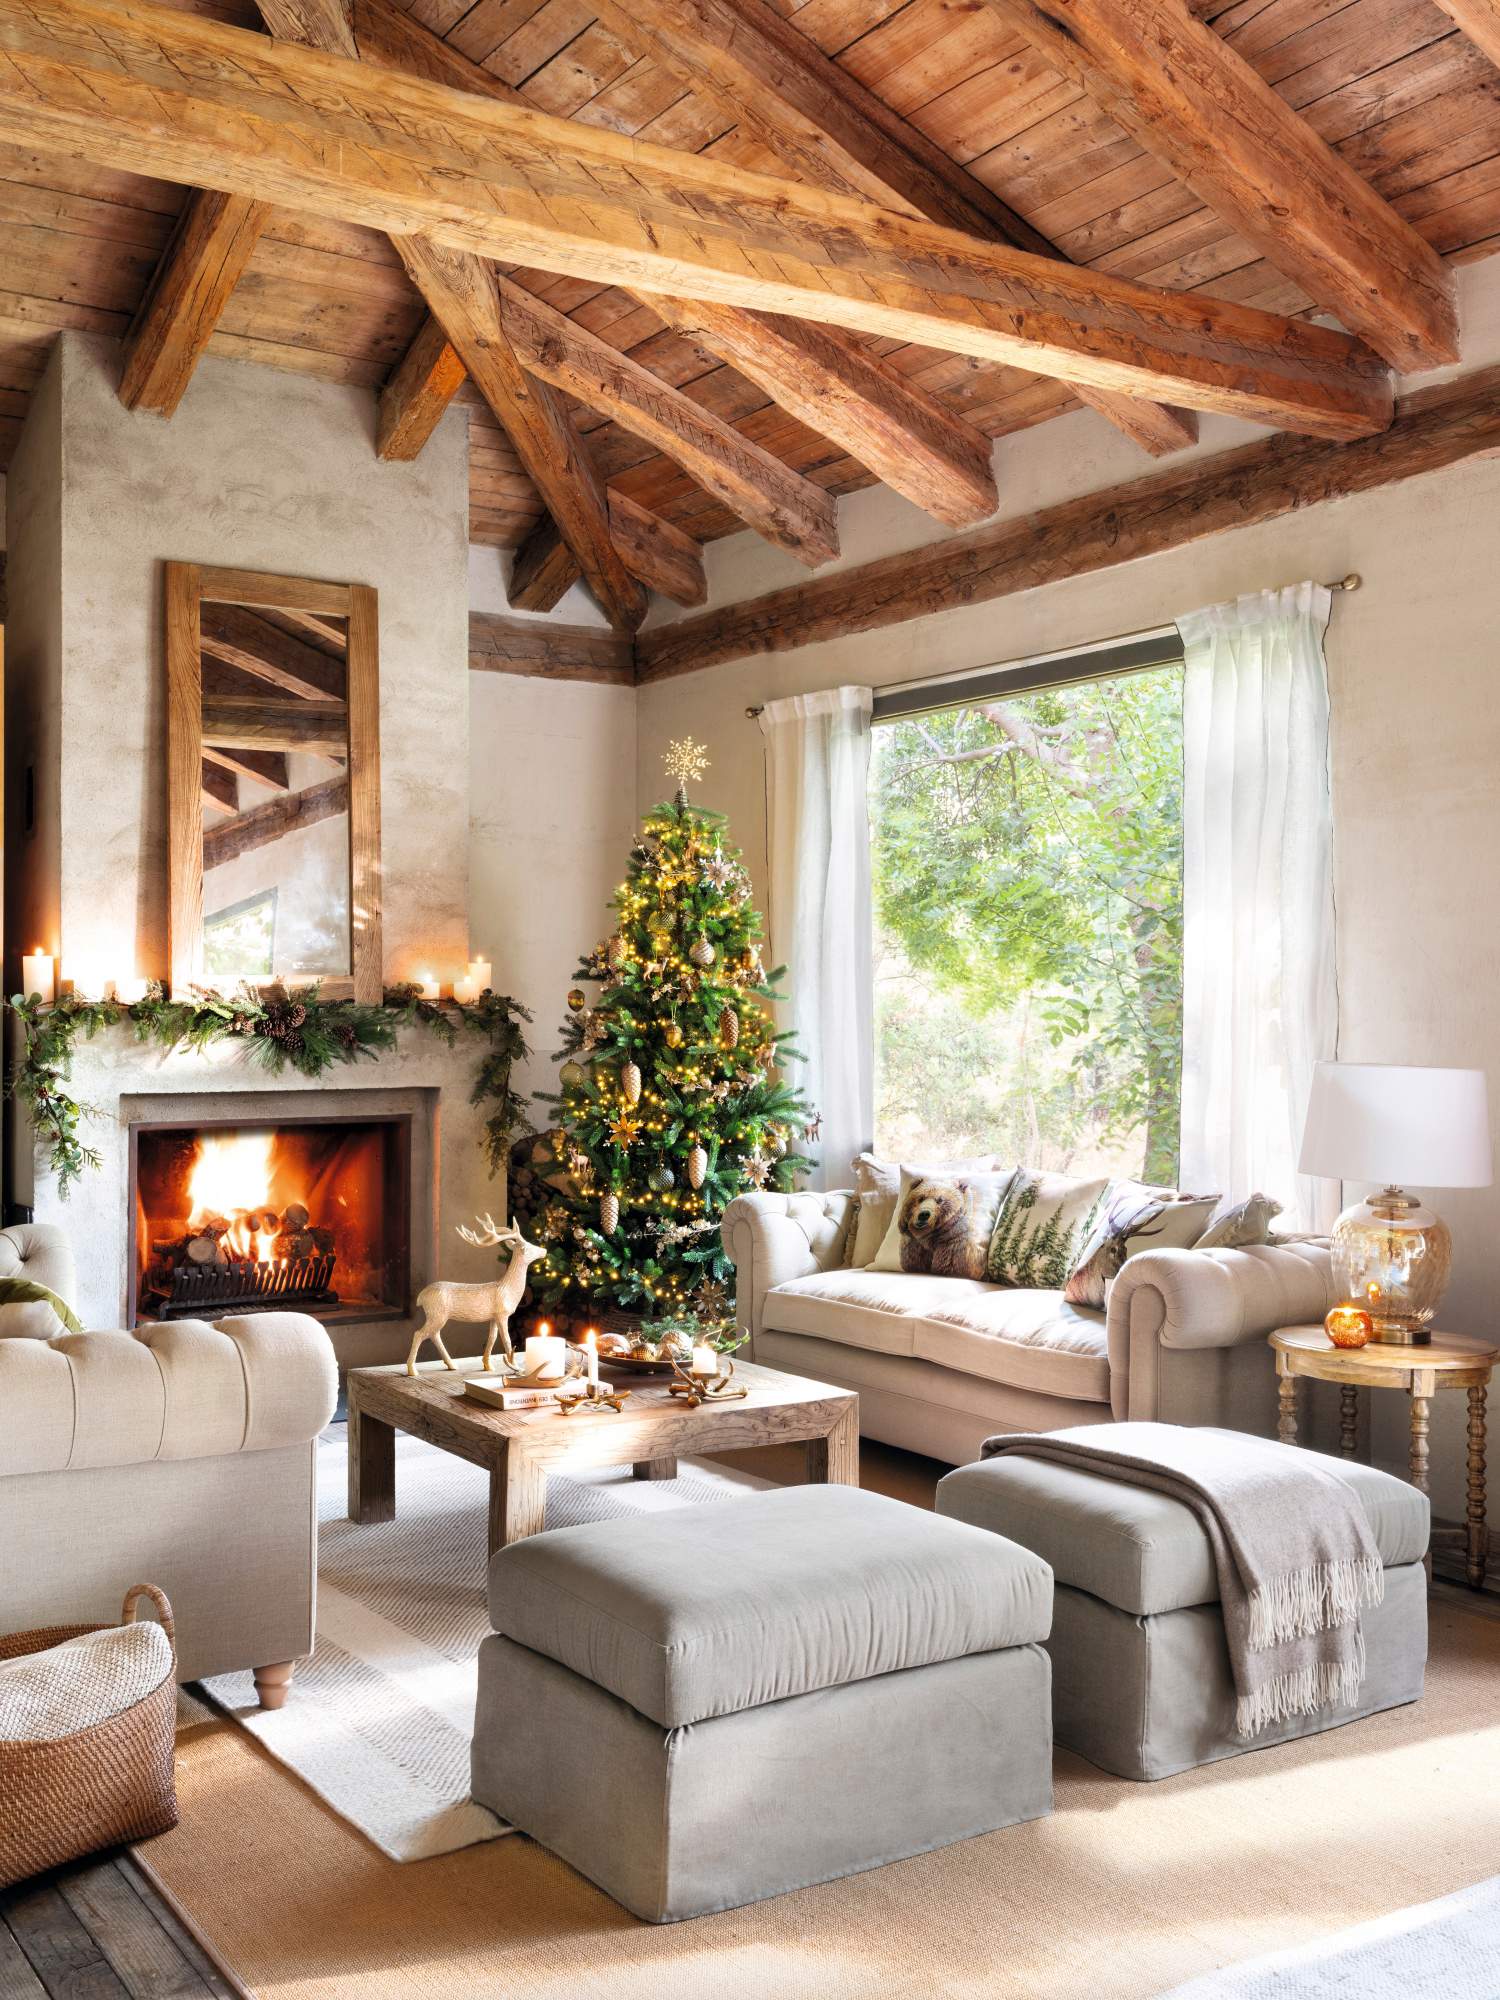 Un salón navideño decorado con árbol y guirnaldas.